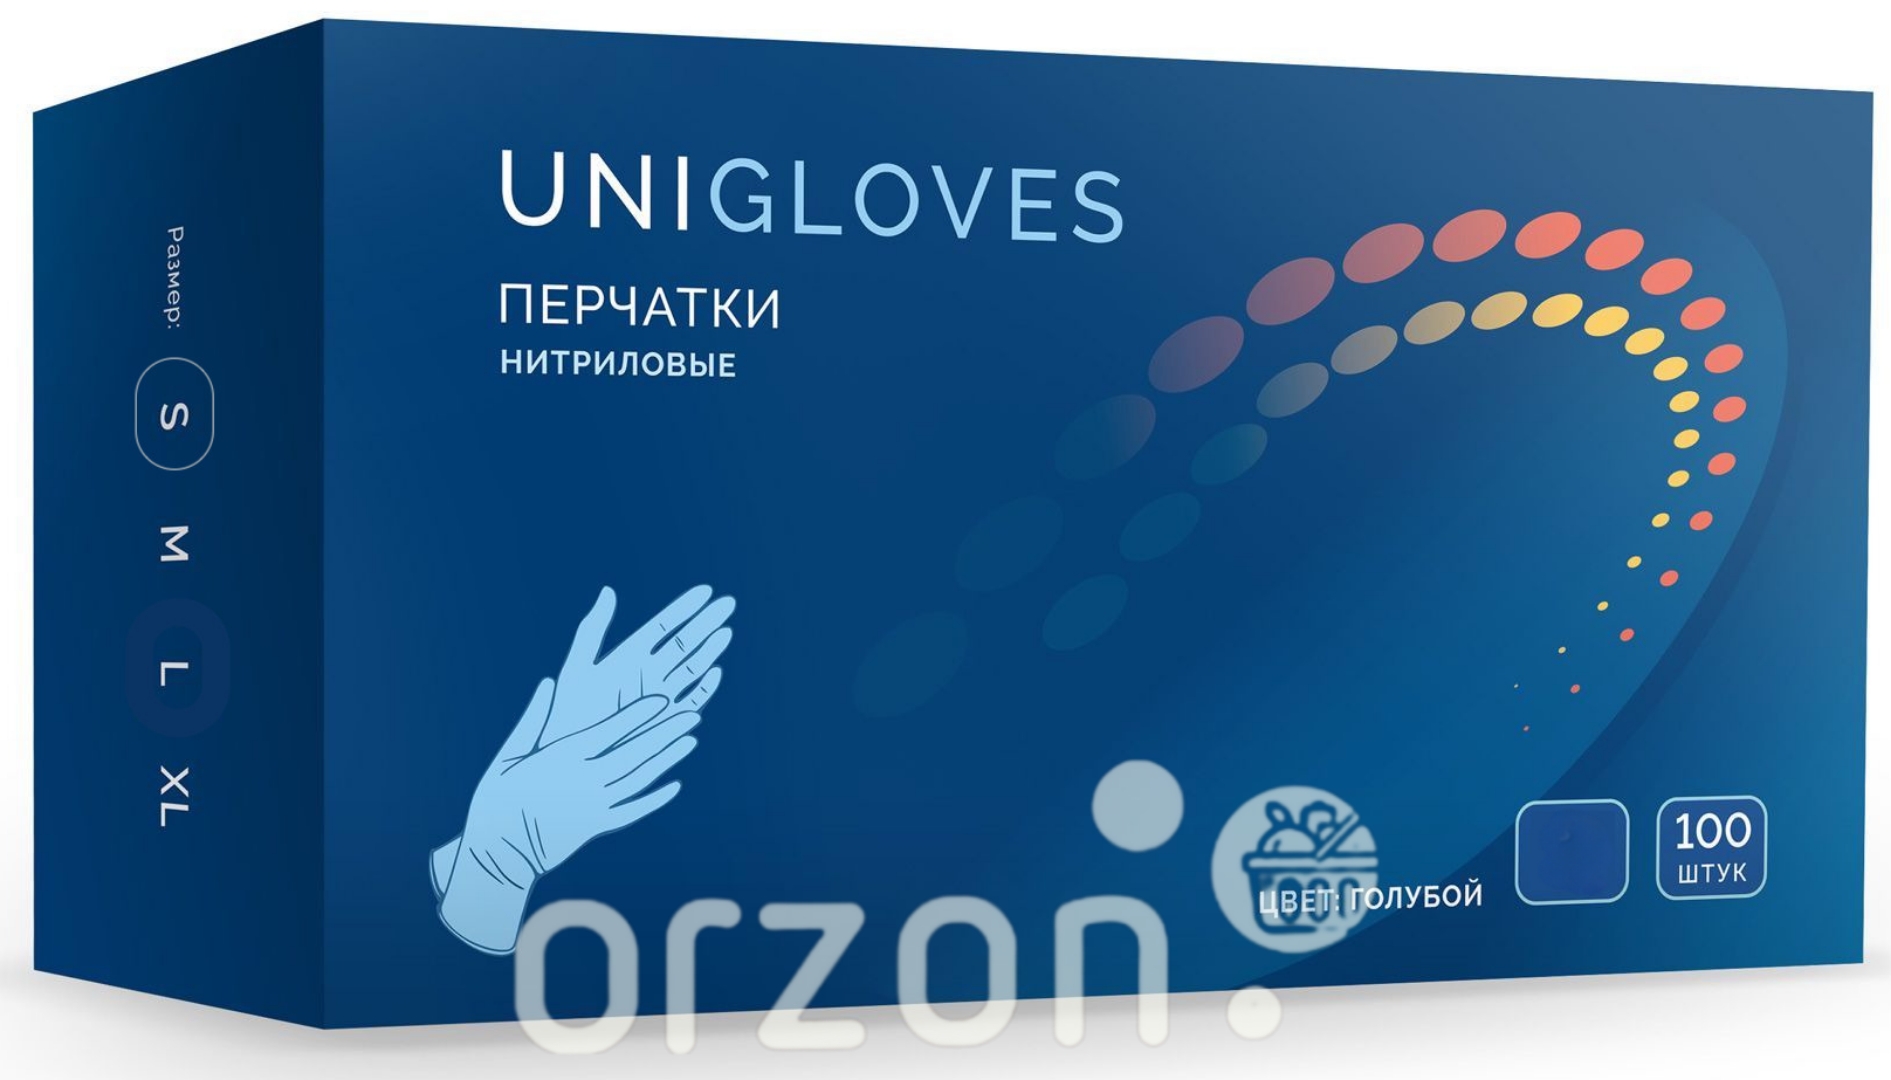 Перчатки одноразовые "UniGloves" Нитриловые  Синие (L) 100 шт